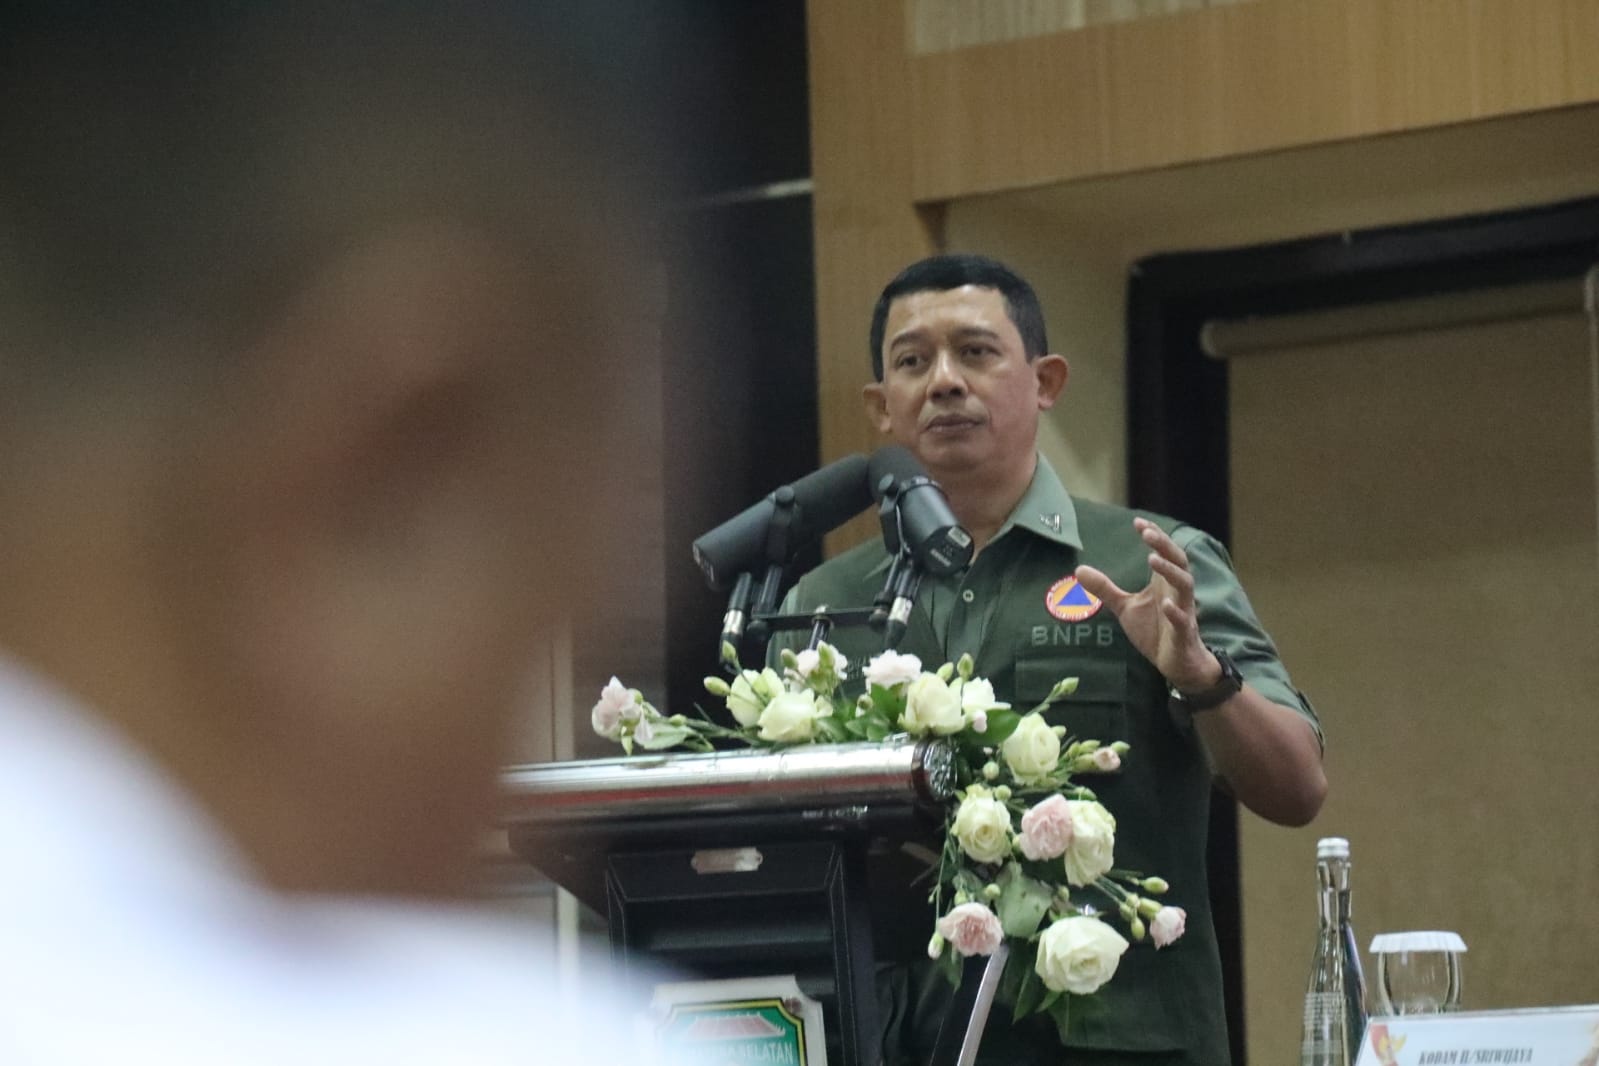 Kepala BNPB Letjen TNI Suharyanto saat memberikan perkembangan penanganan Karhutla pada Rapat Koordinasi Penanganan Kebakaran Hutan dan Lahan di Kantor Gubernur Sumatera Selatan, Palembang, Sumatera Selatan pada Selasa (12/9).